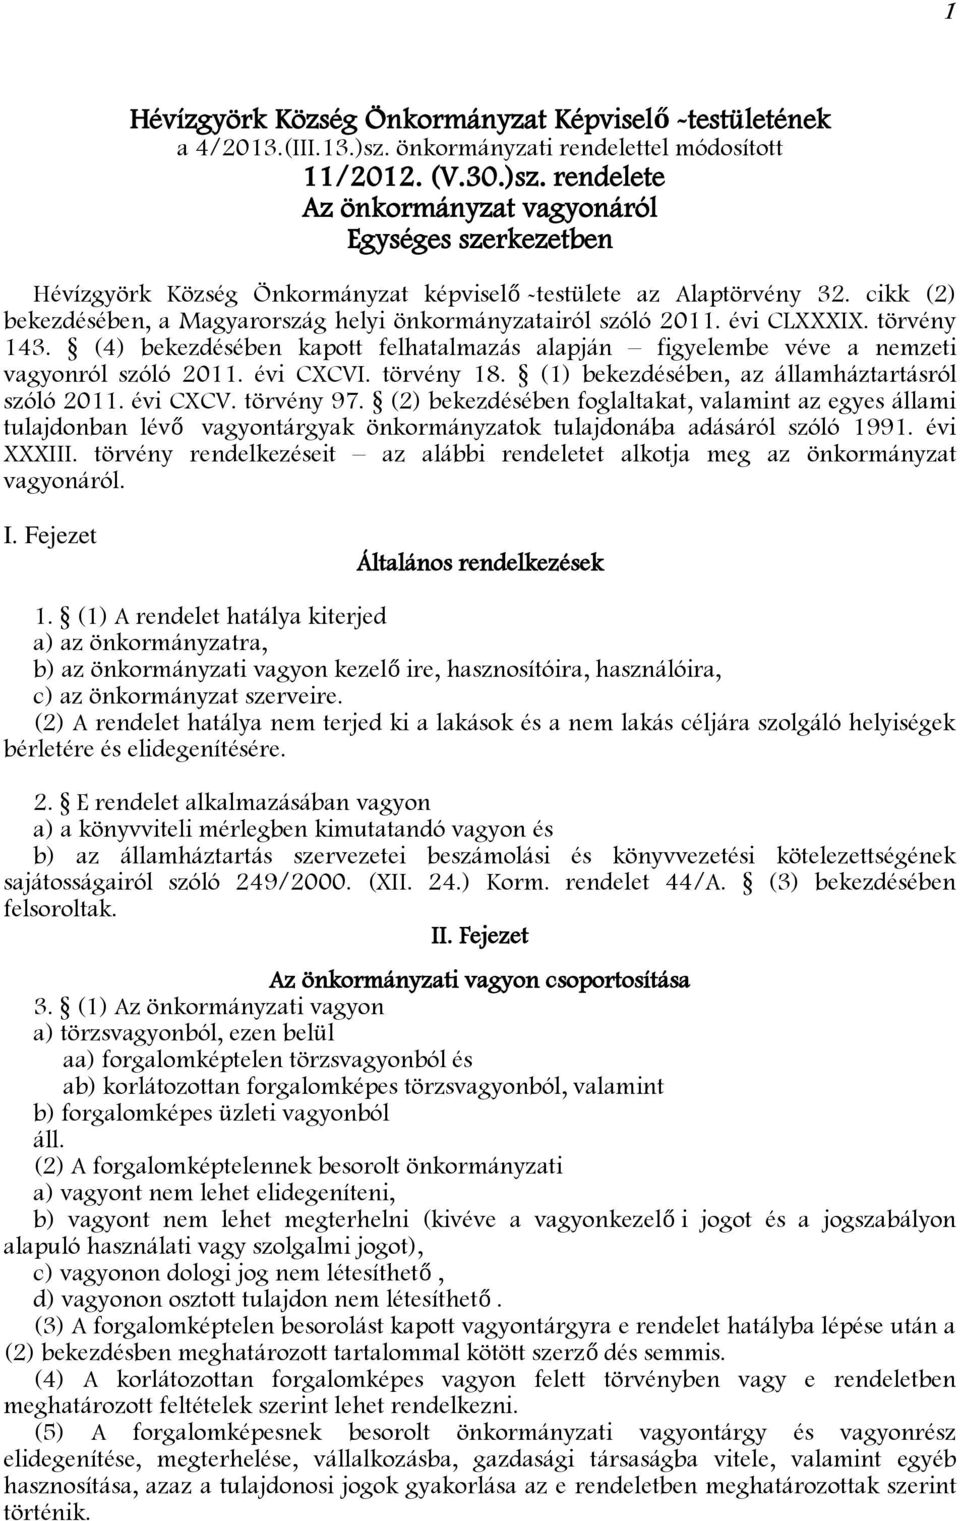 cikk (2) bekezdésében, a Magyarország helyi önkormányzatairól szóló 2011. évi CLXXXIX. törvény 143. (4) bekezdésében kapott felhatalmazás alapján figyelembe véve a nemzeti vagyonról szóló 2011.